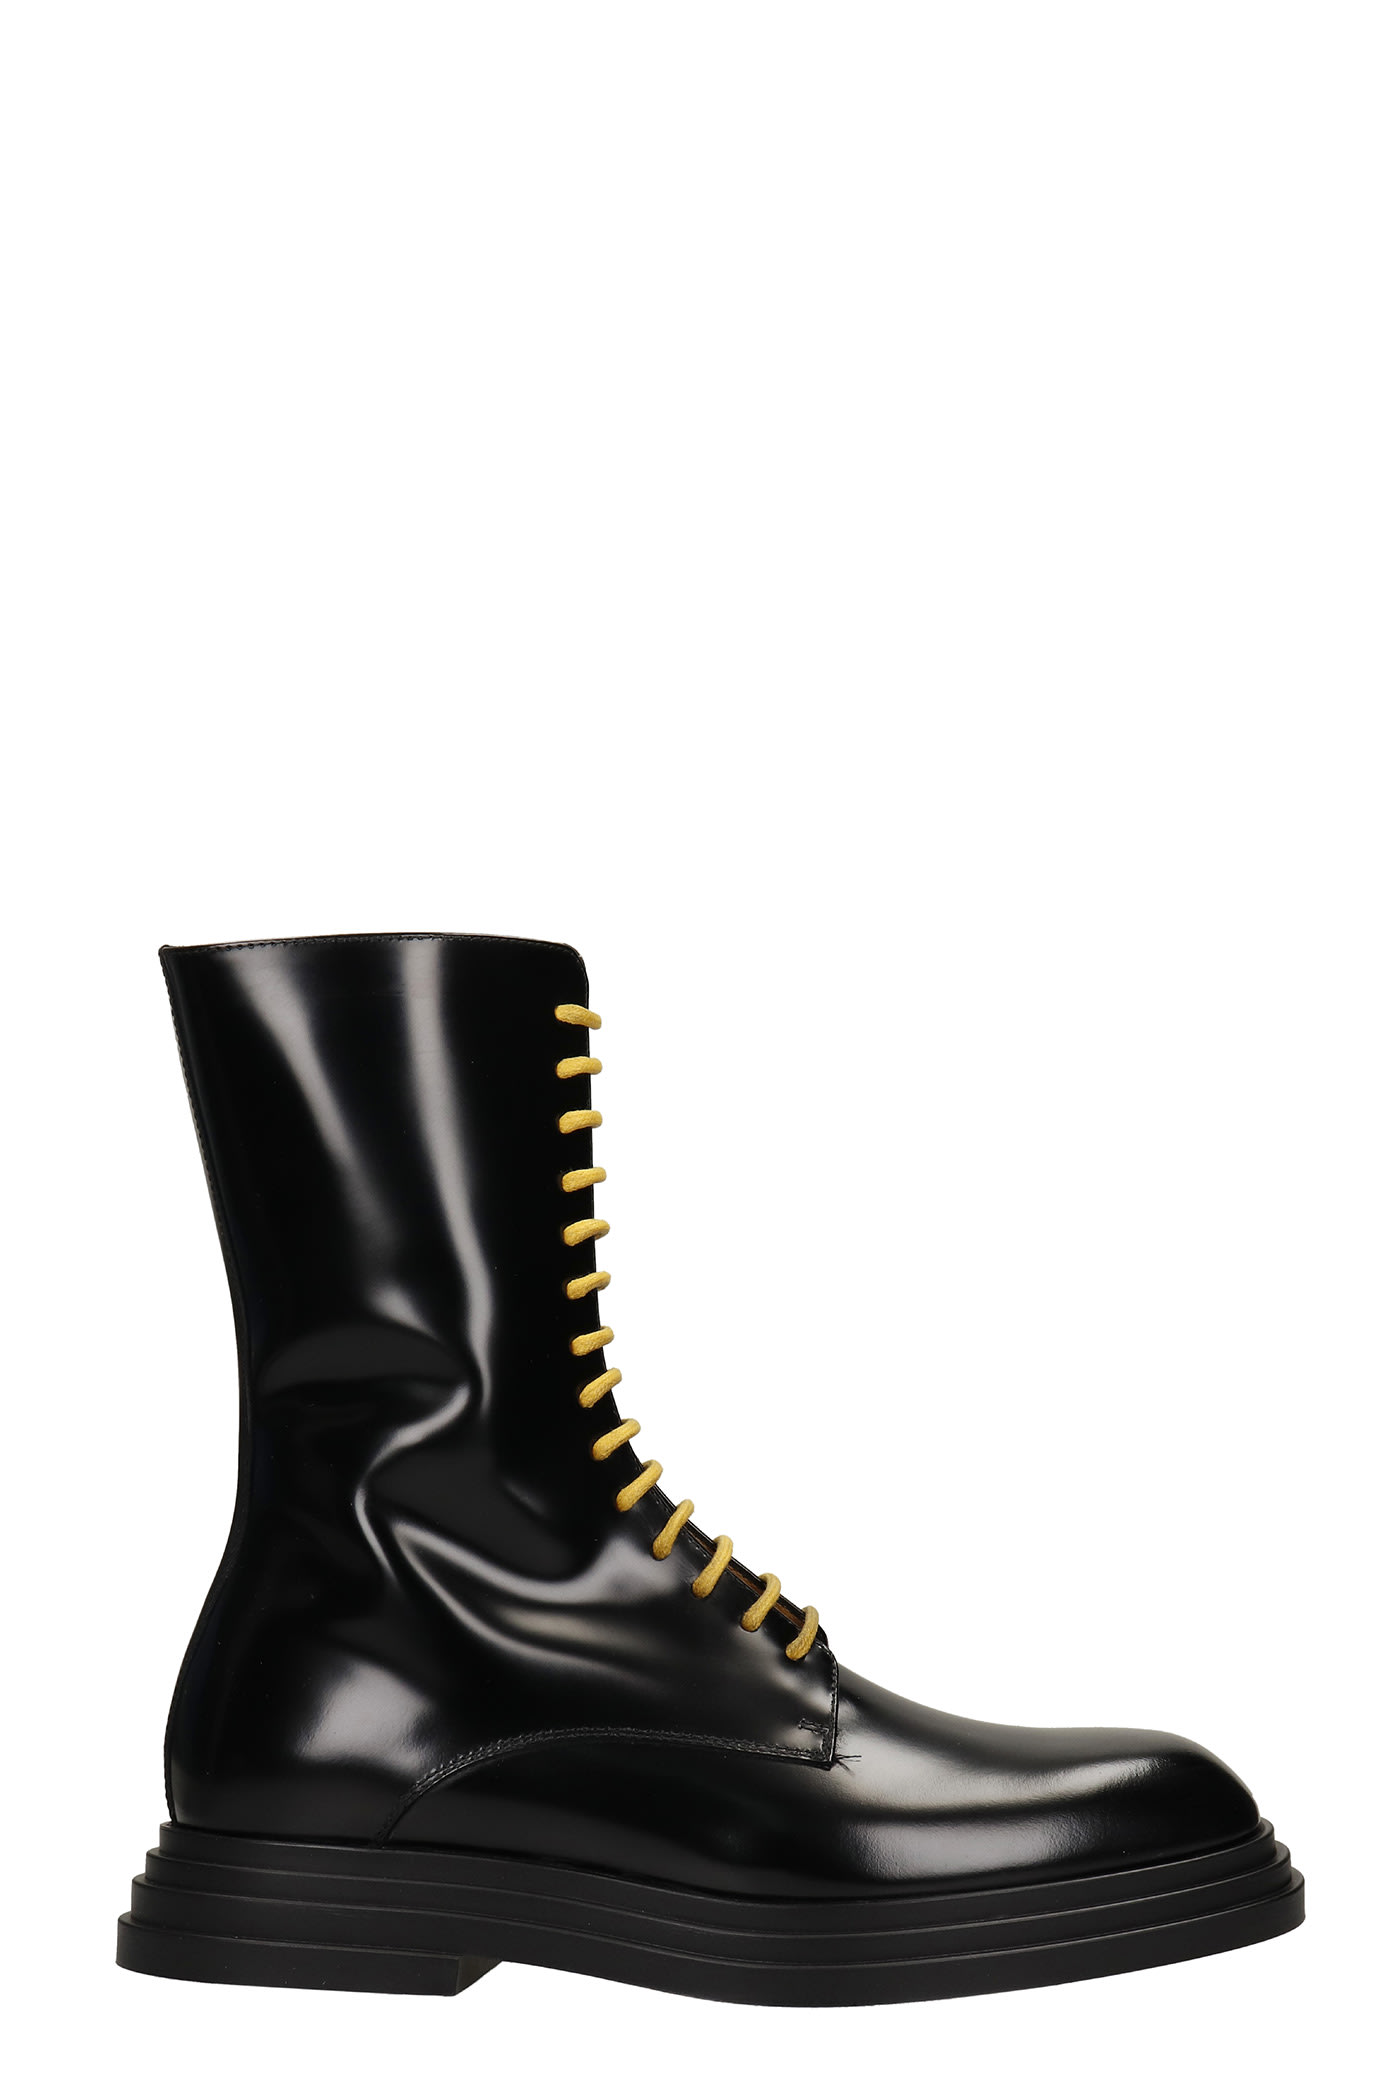 Cesare Paciotti Anfibio Alto Combat Boots In Black Leather